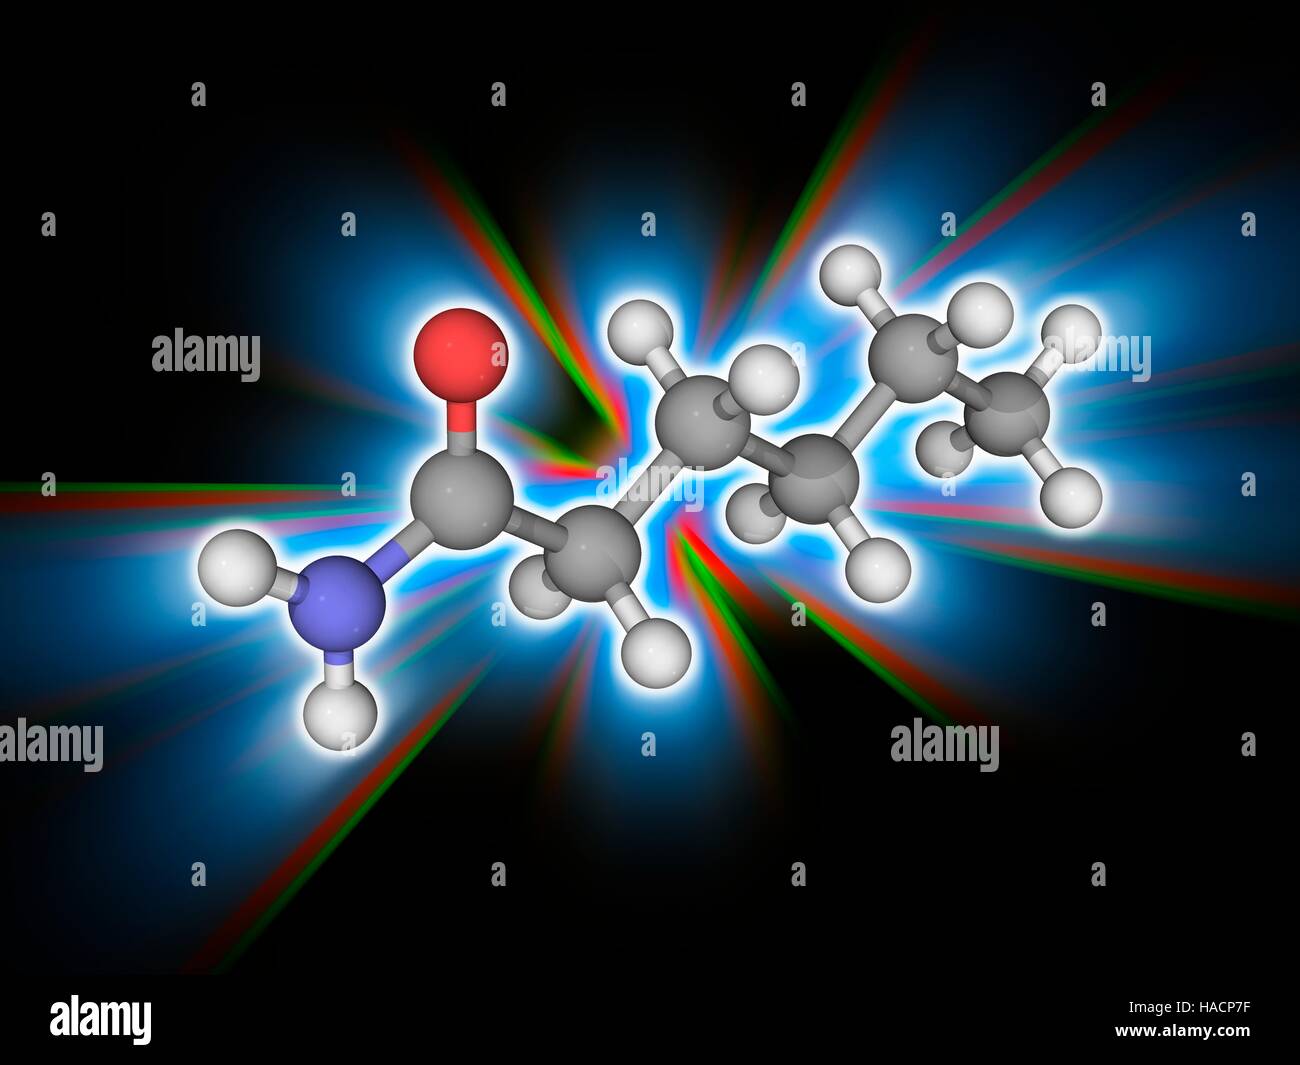 Hexanamide. Molekülmodell der organischen Verbindung und Amid Hexanamide (C6. H13. Navi), auch bekannt als Capronamide. Diese Chemikalie reagiert mit azo und diazo-Verbindungen, giftige Gase erzeugen. Atome als Kugeln dargestellt werden und sind farblich gekennzeichnet: Kohlenstoff (grau), Wasserstoff (weiß), Stickstoff (blau) und Sauerstoff (rot). Abbildung. Stockfoto